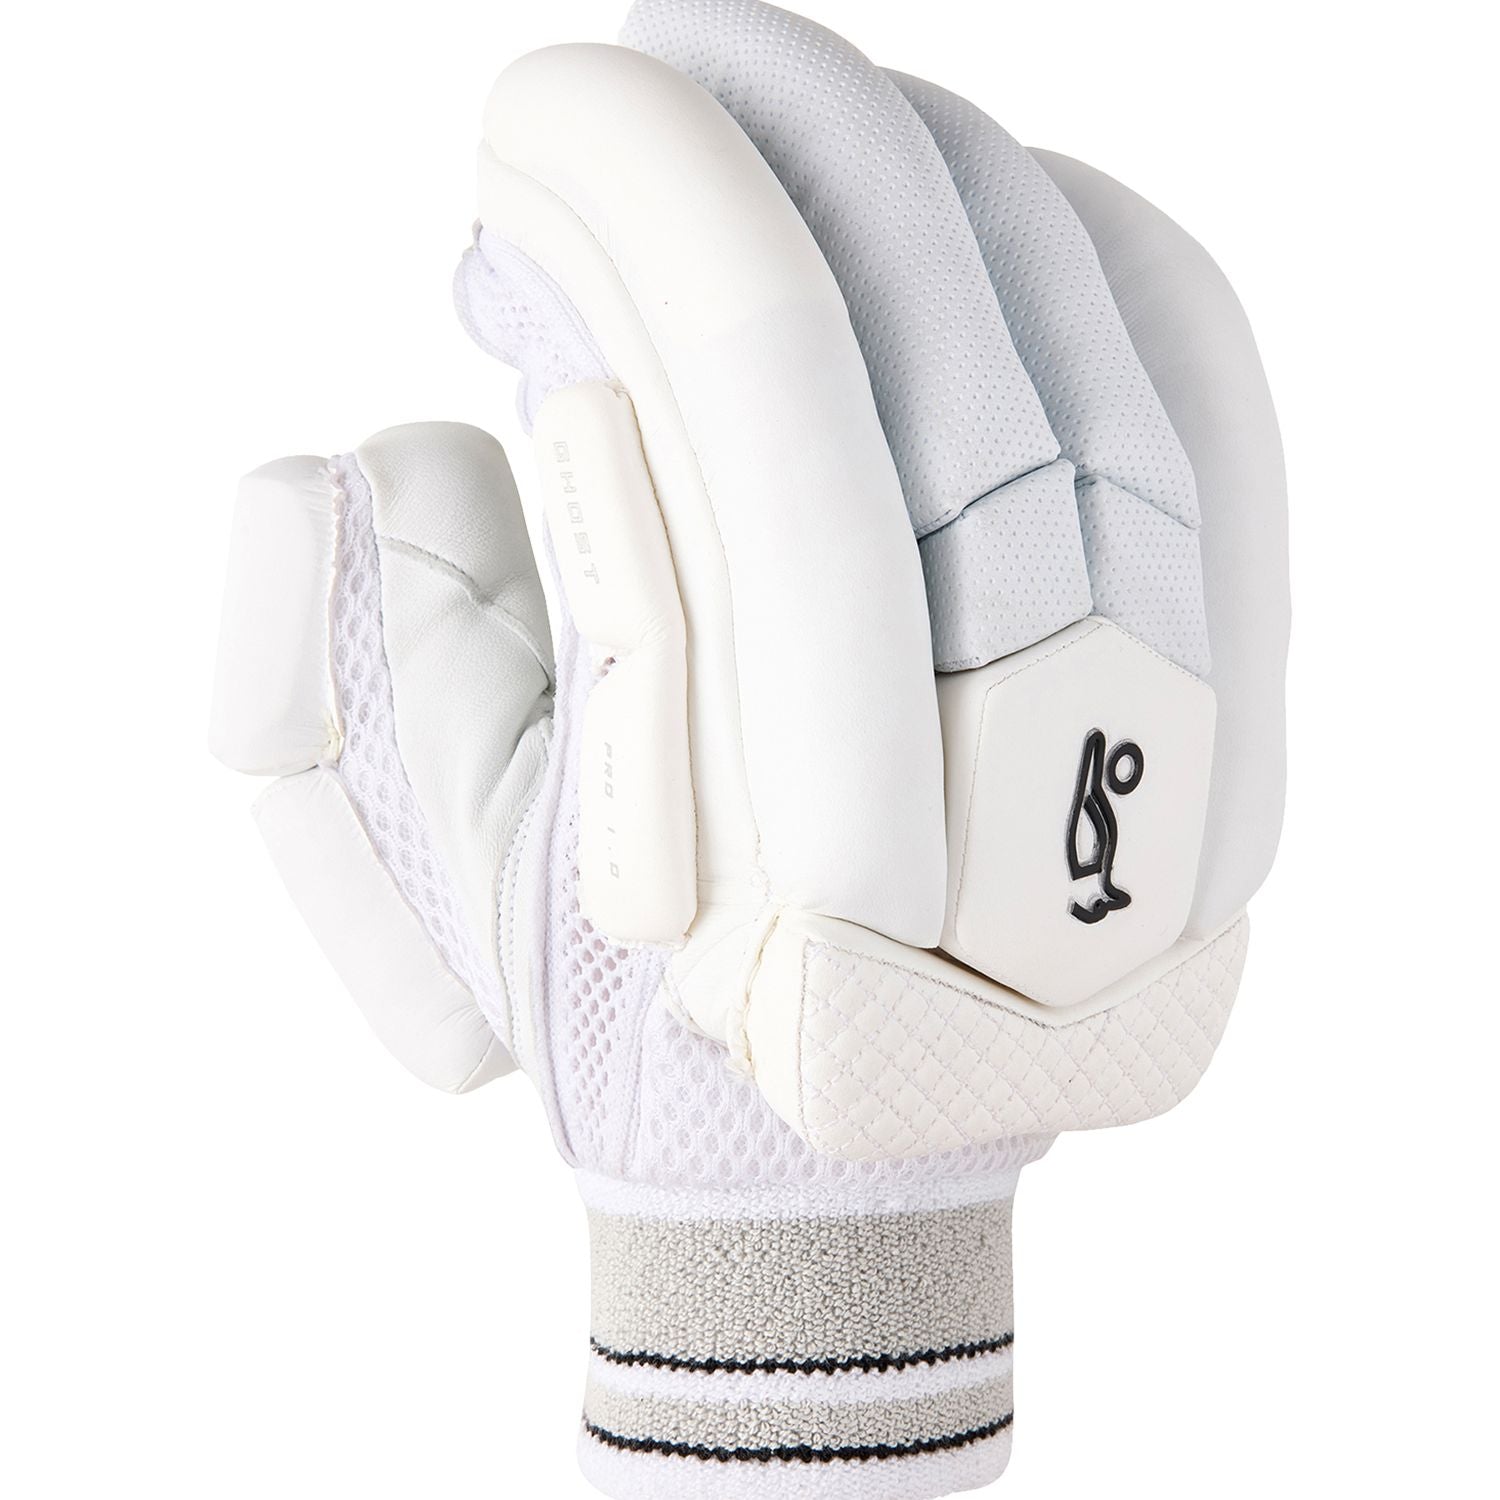 Kookaburra Ghost Pro 1.0 Cricket Batting Gloves - The Cricket Warehouse